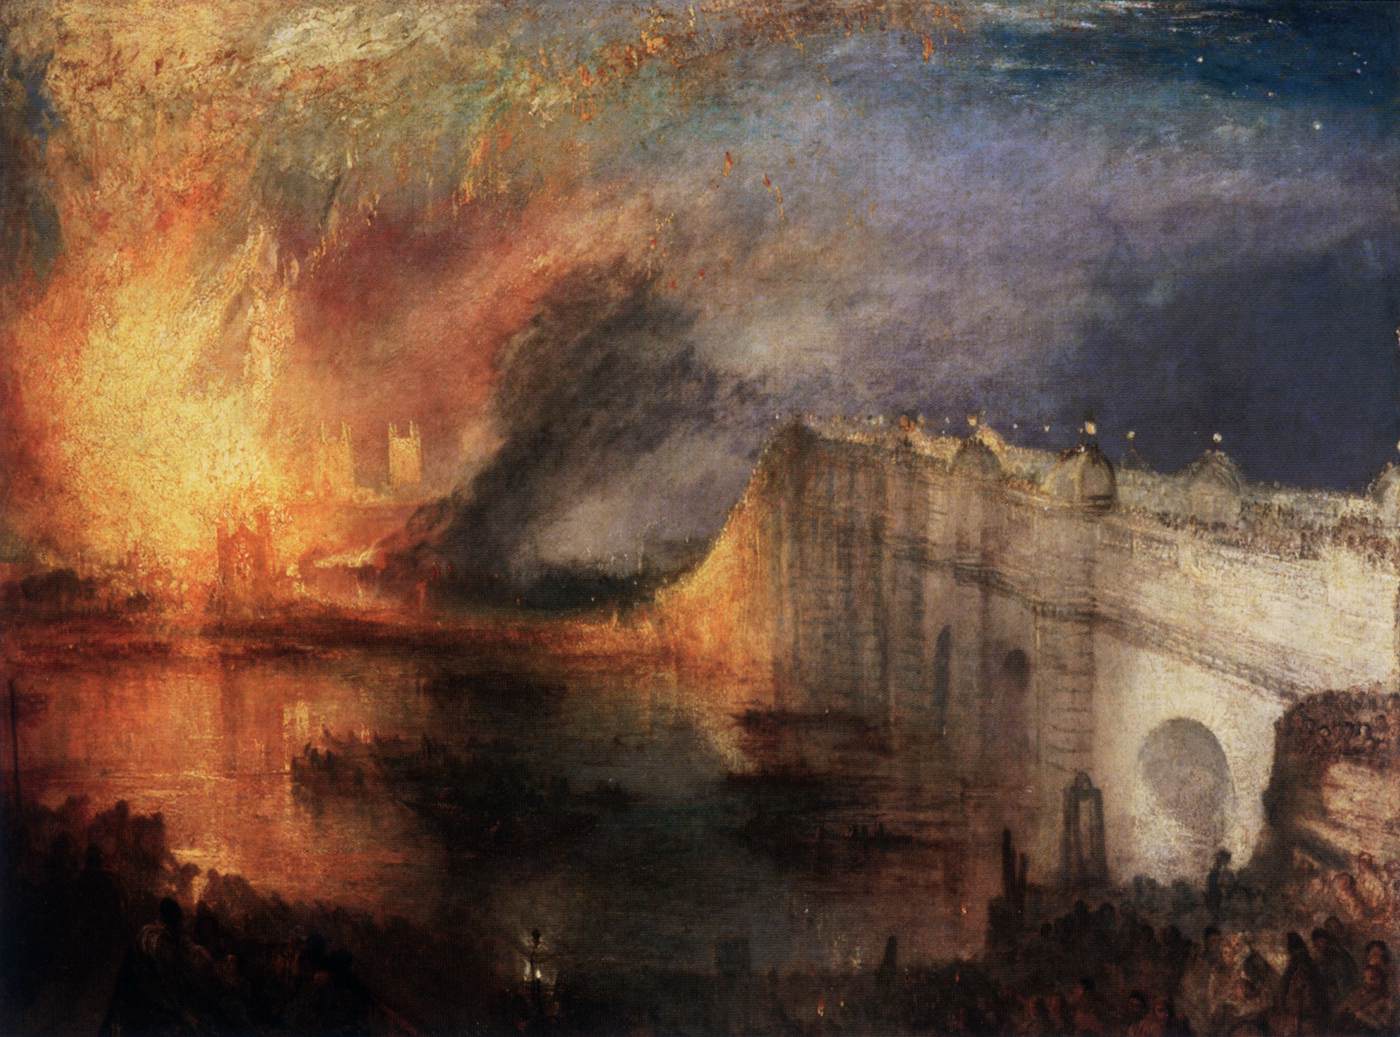 שריפת בתי הלורדים והסחורות המשותפים, 16 באוקטובר 1834